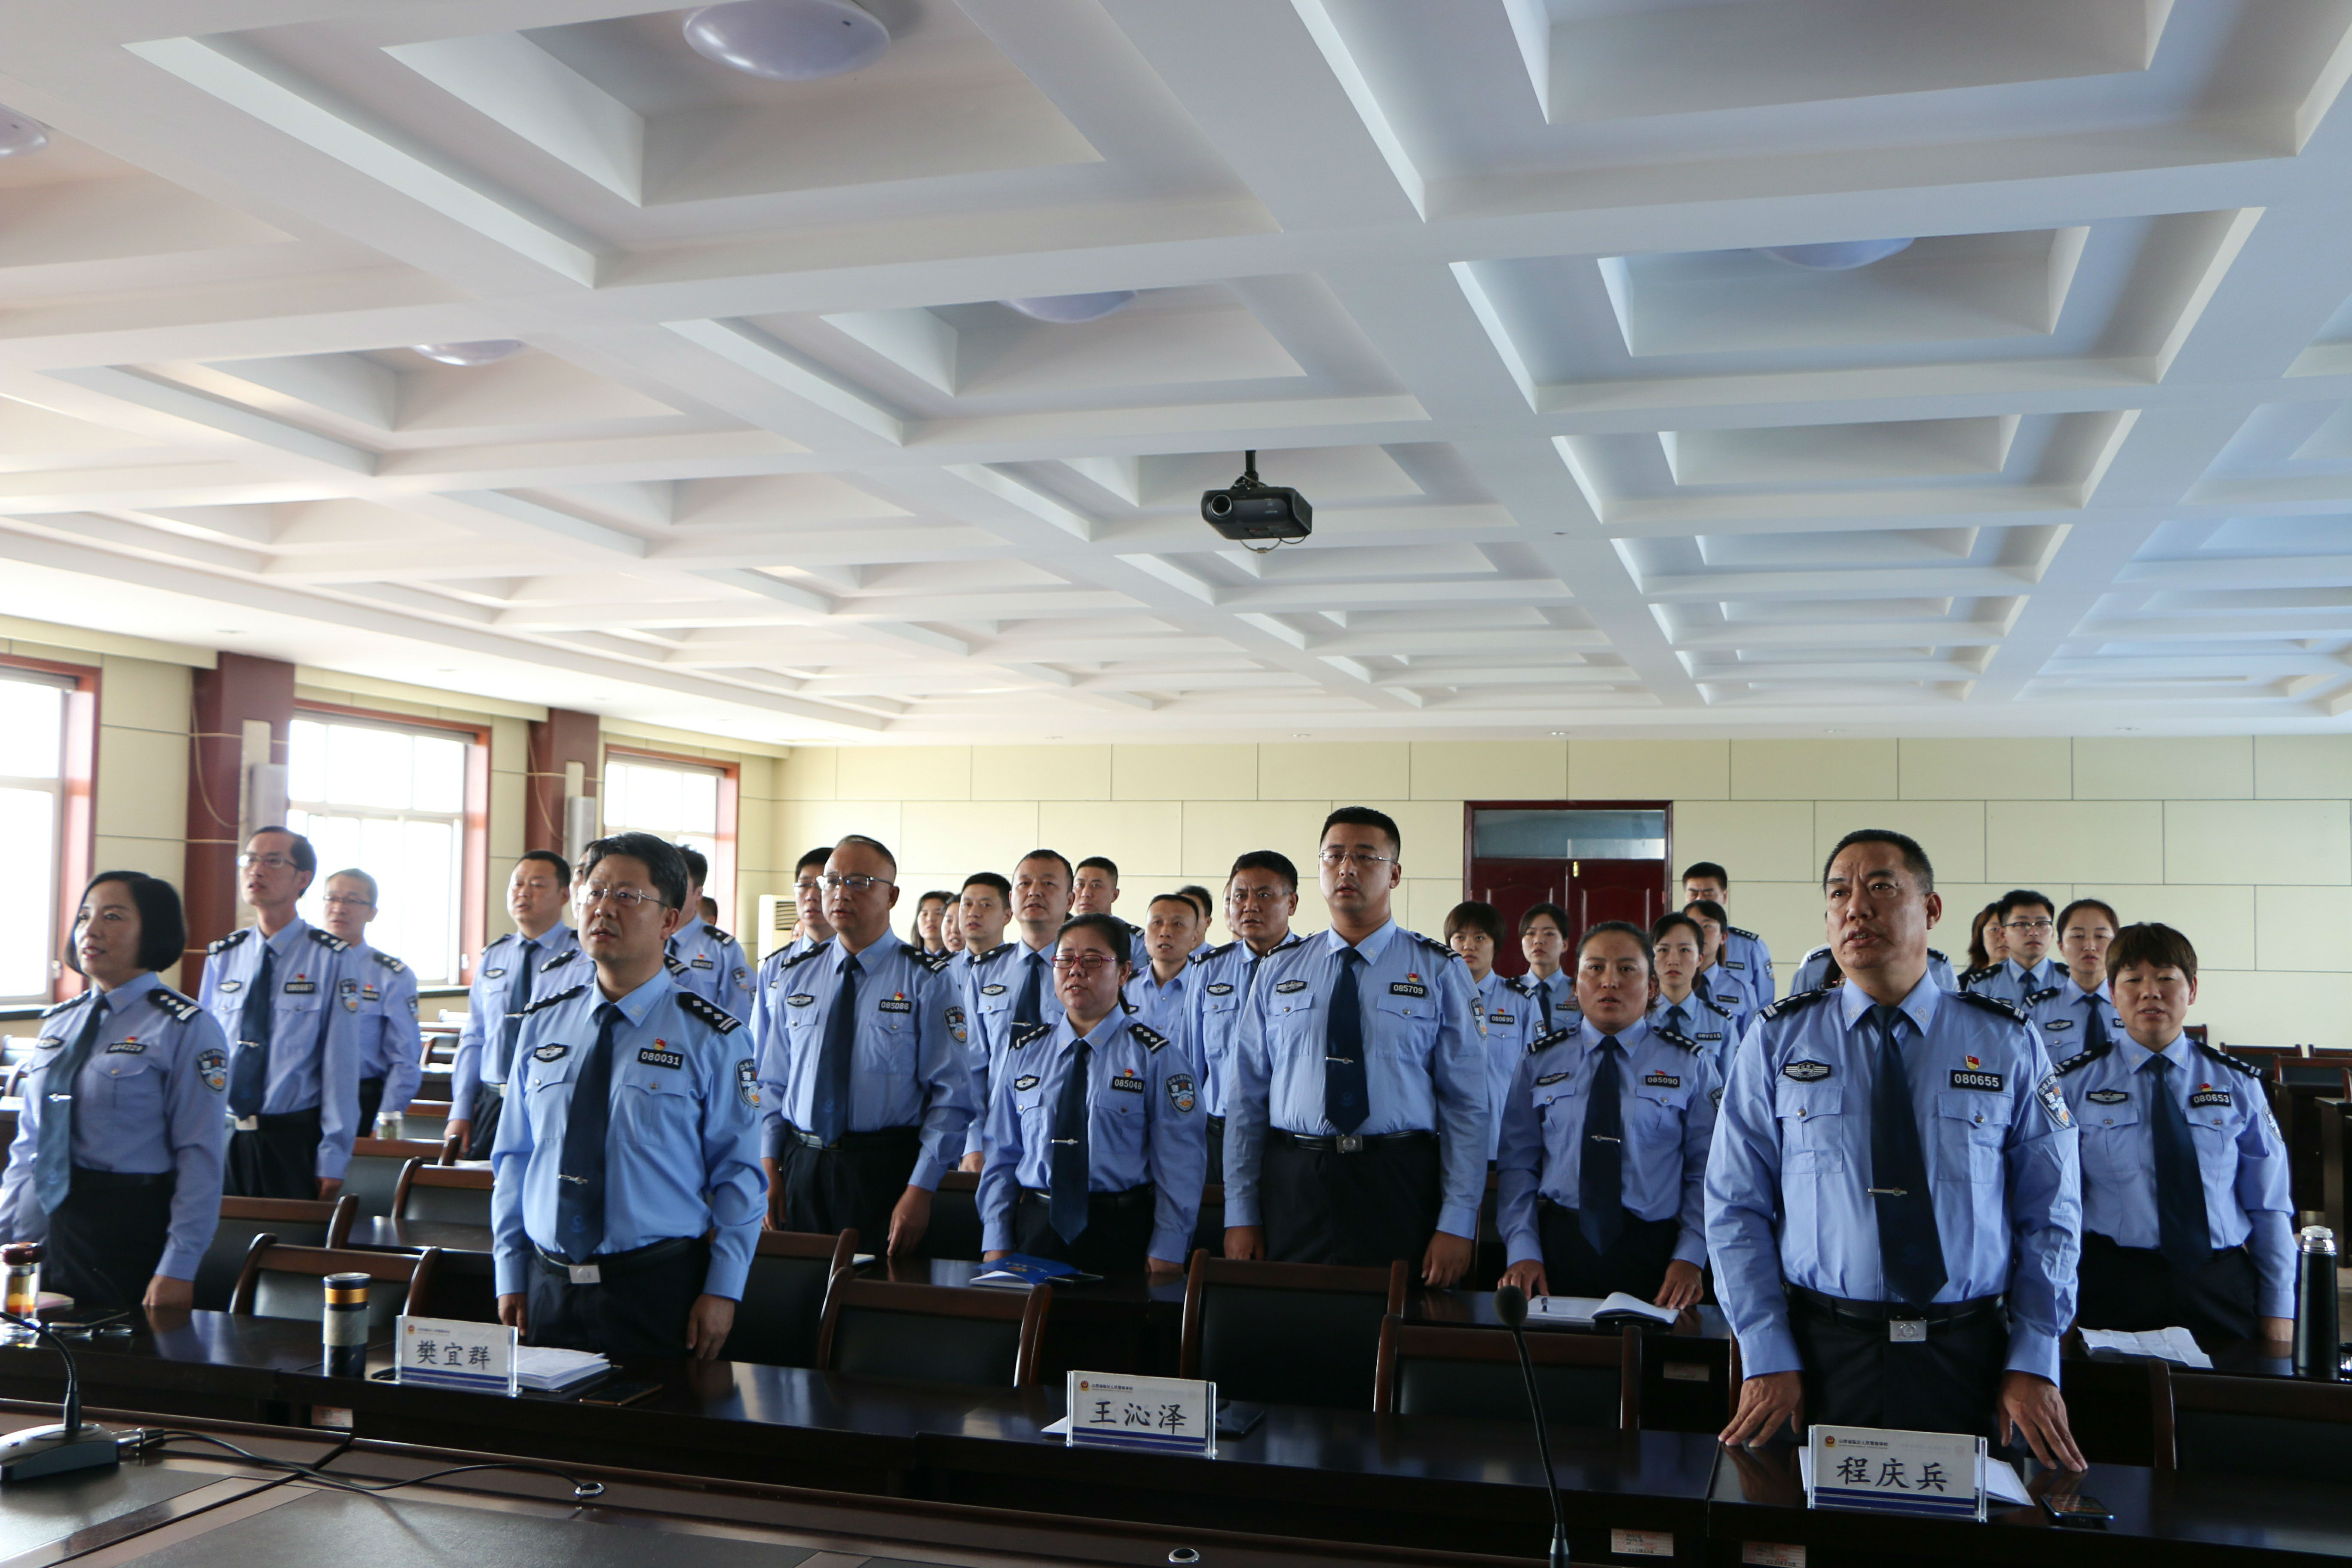 临汾警校庆祝中华人民共和国成立70周年系列活动